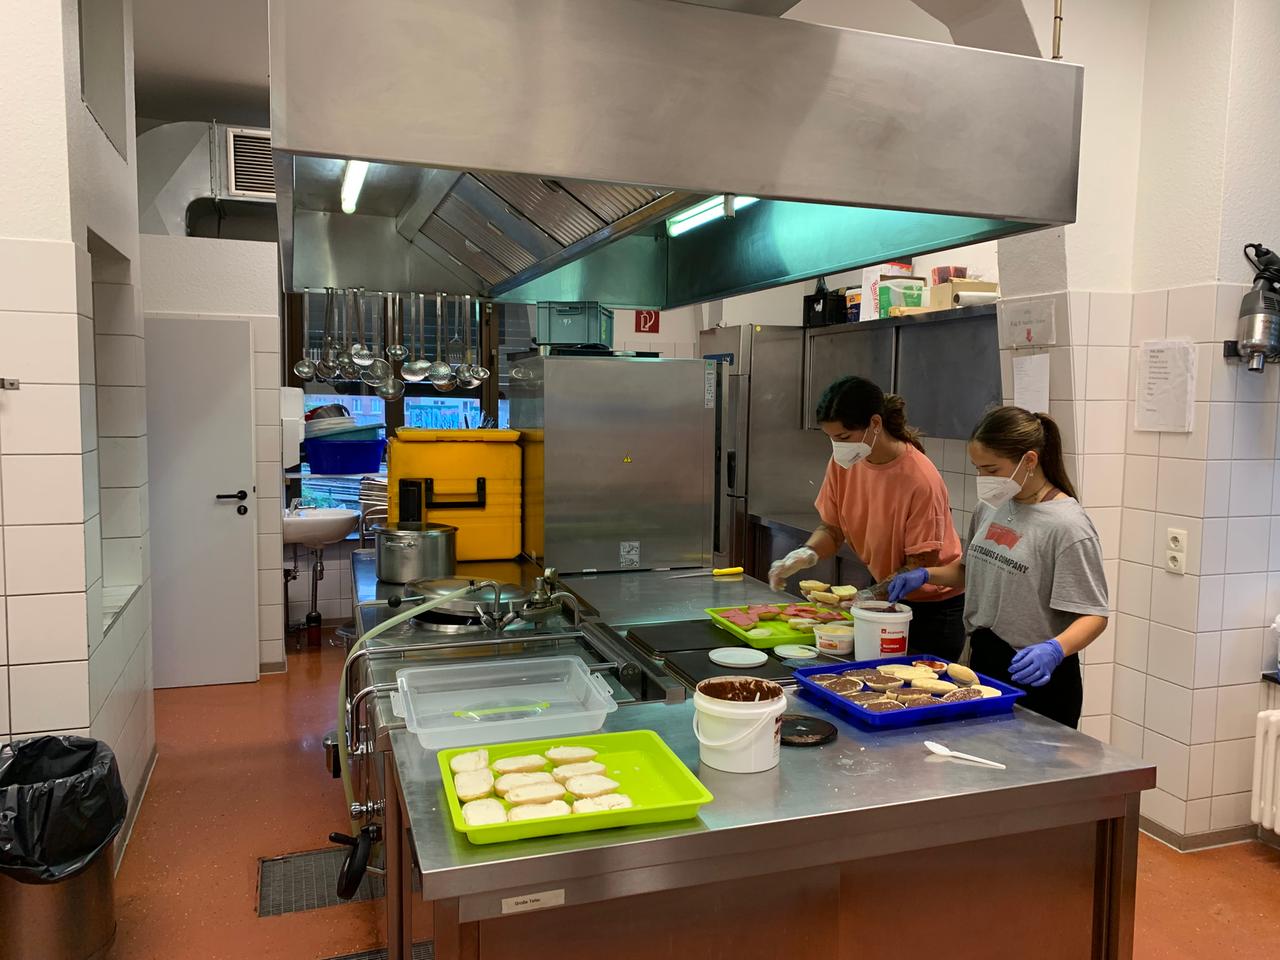 Zwei Frauen mit MAske bei der Zubereitung von Speisen in einer Großküche